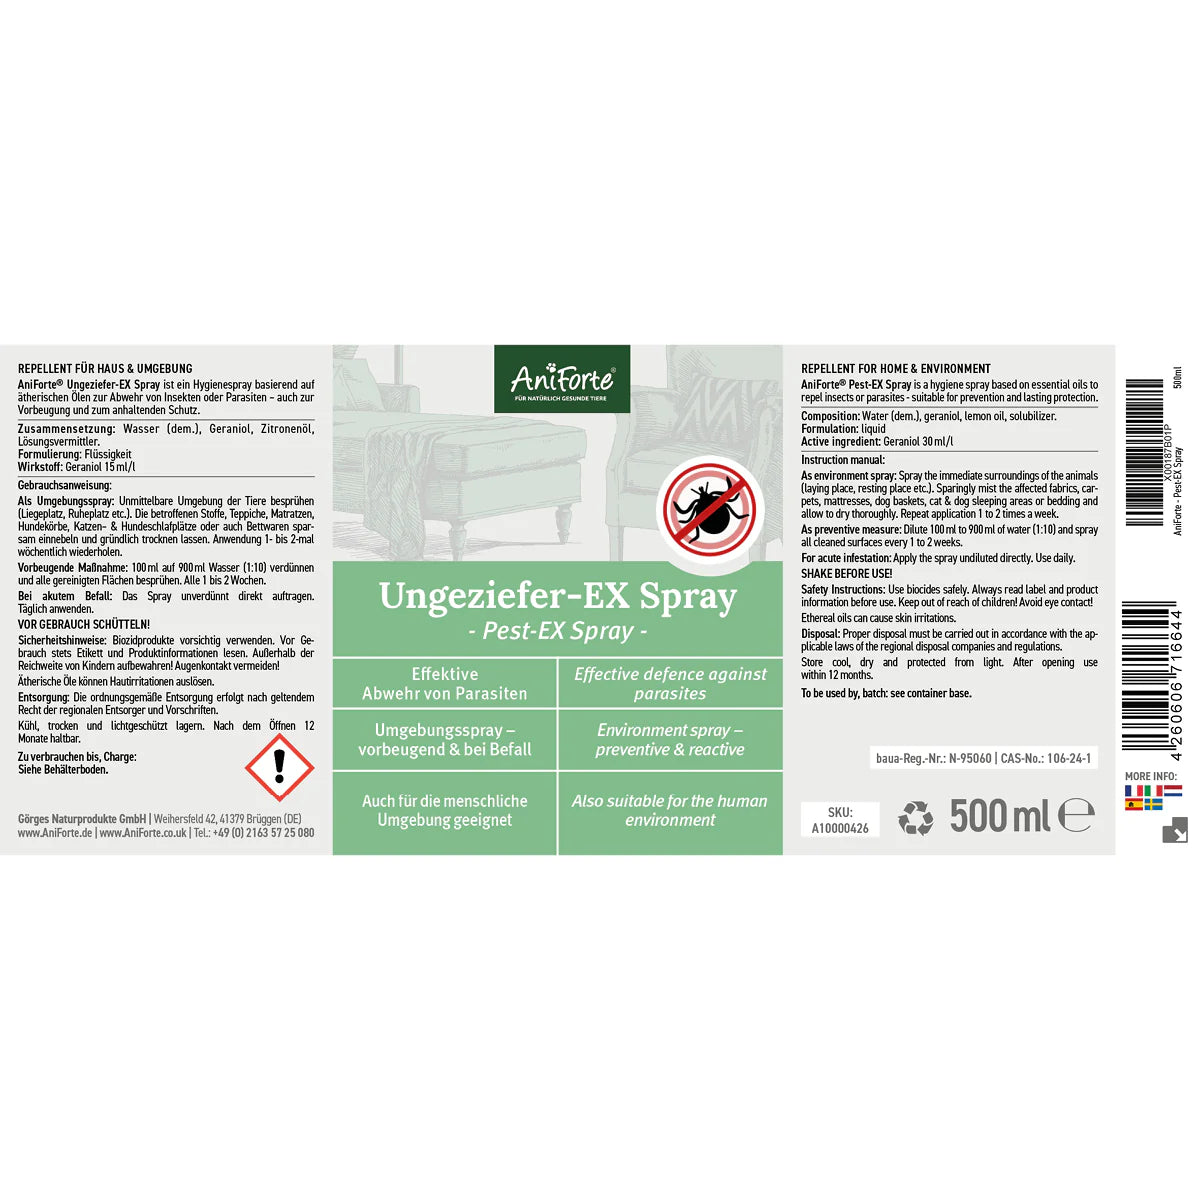 Aniforte-Ungeziefer-Ex-Spray-Etikett